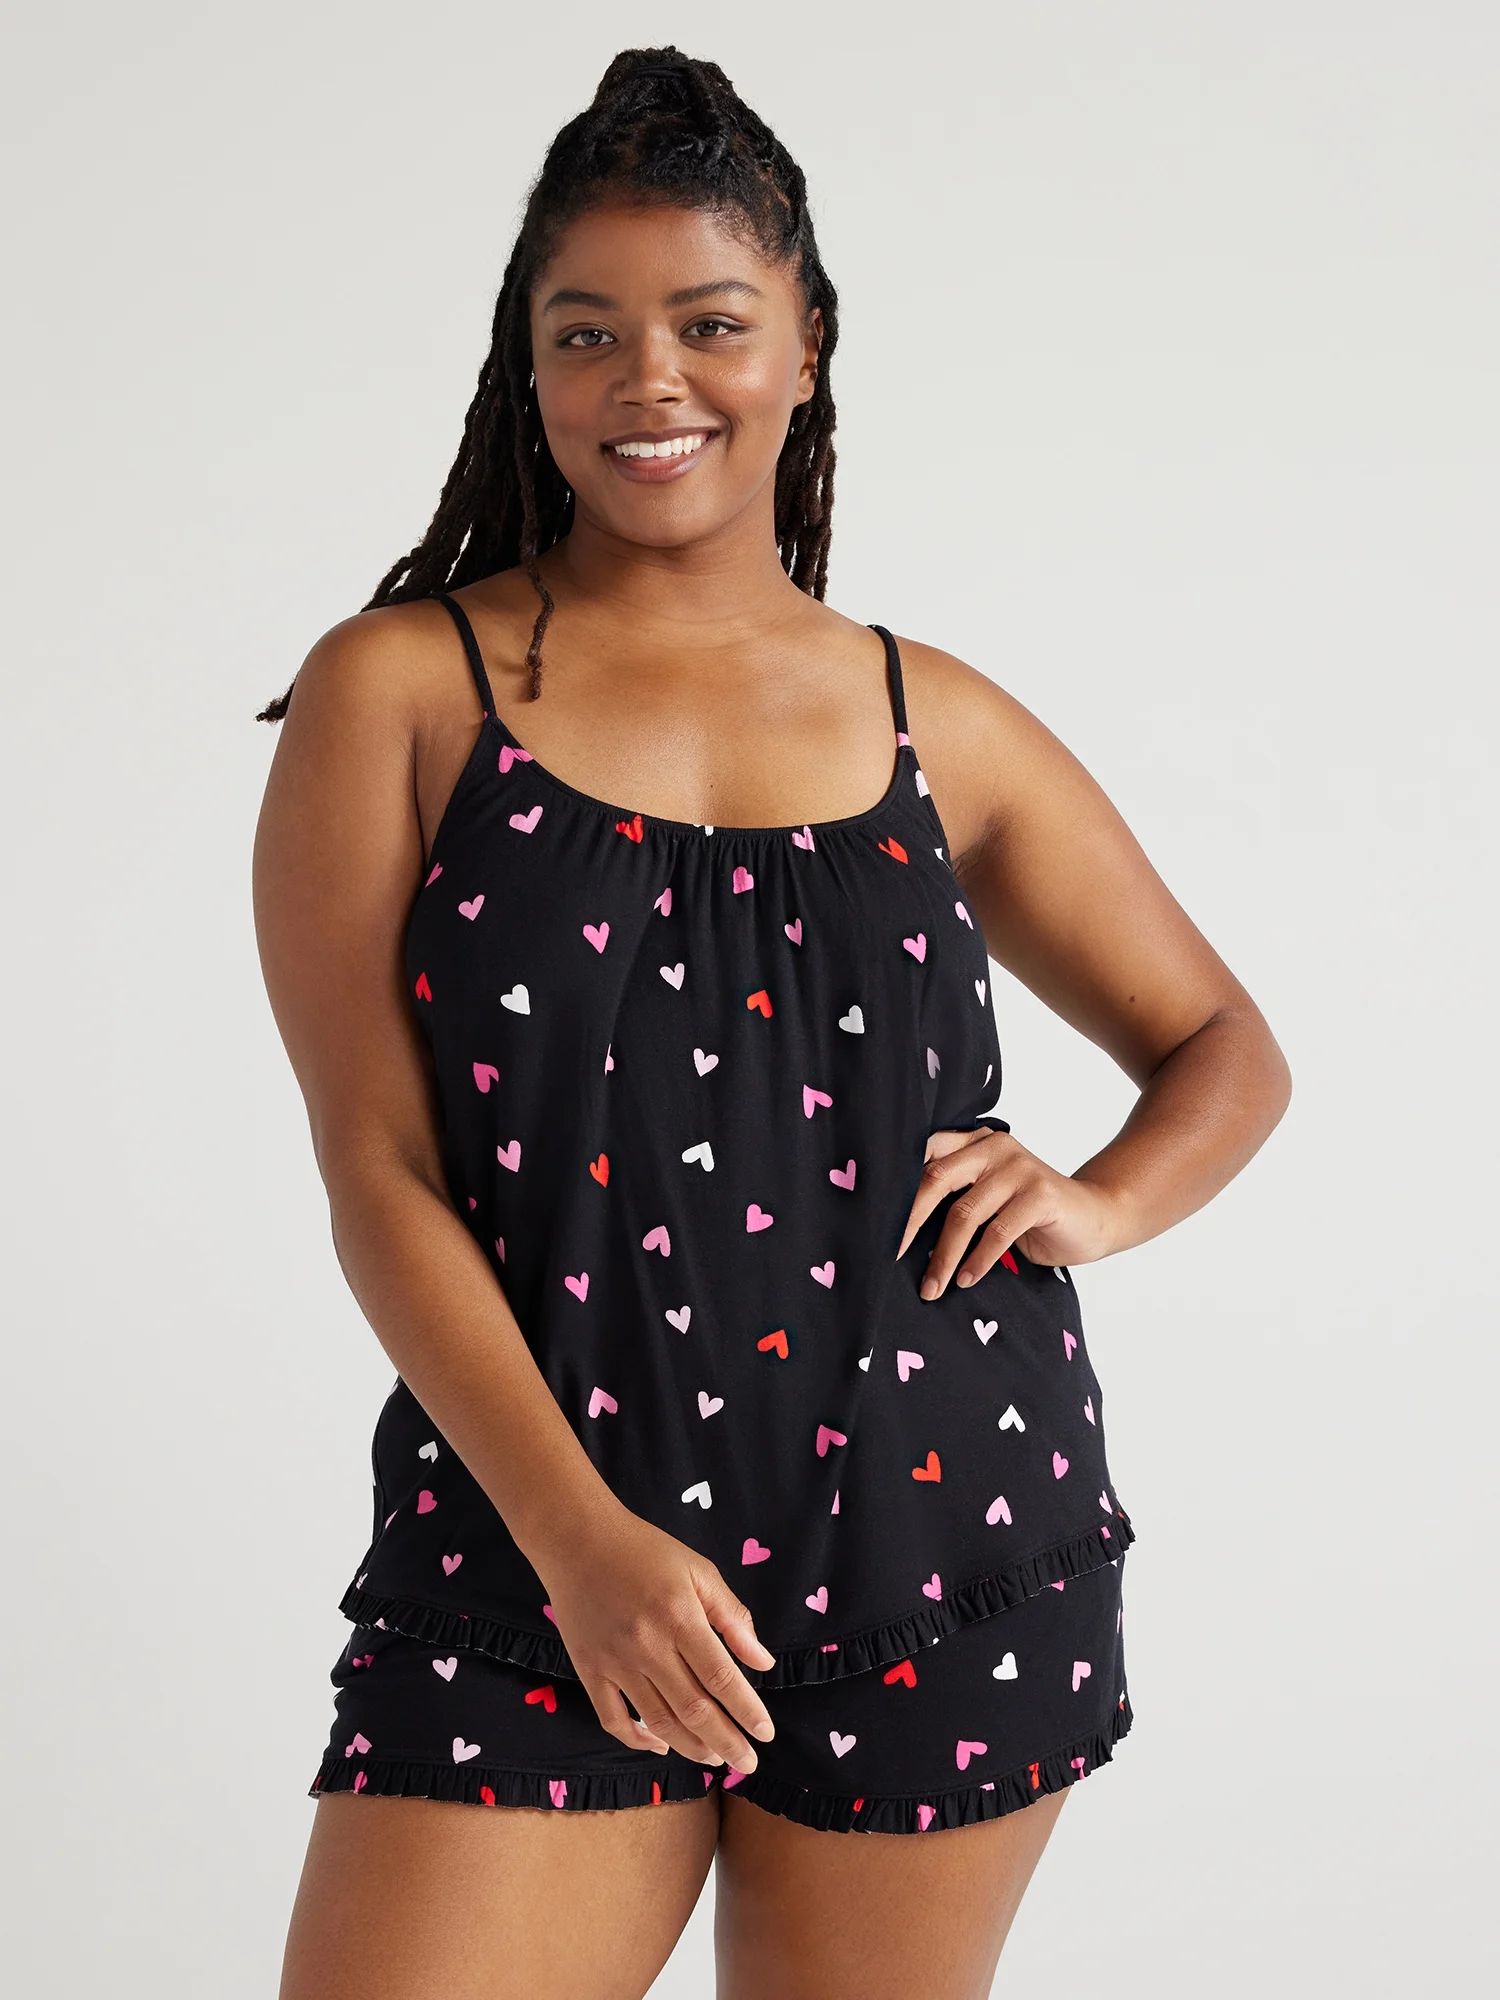 Joyspun Women’s Knit Camisole and Shorts Pajama Set with Pockets, 2-Piece, Sizes S to 3X - Walm... | Walmart (US)